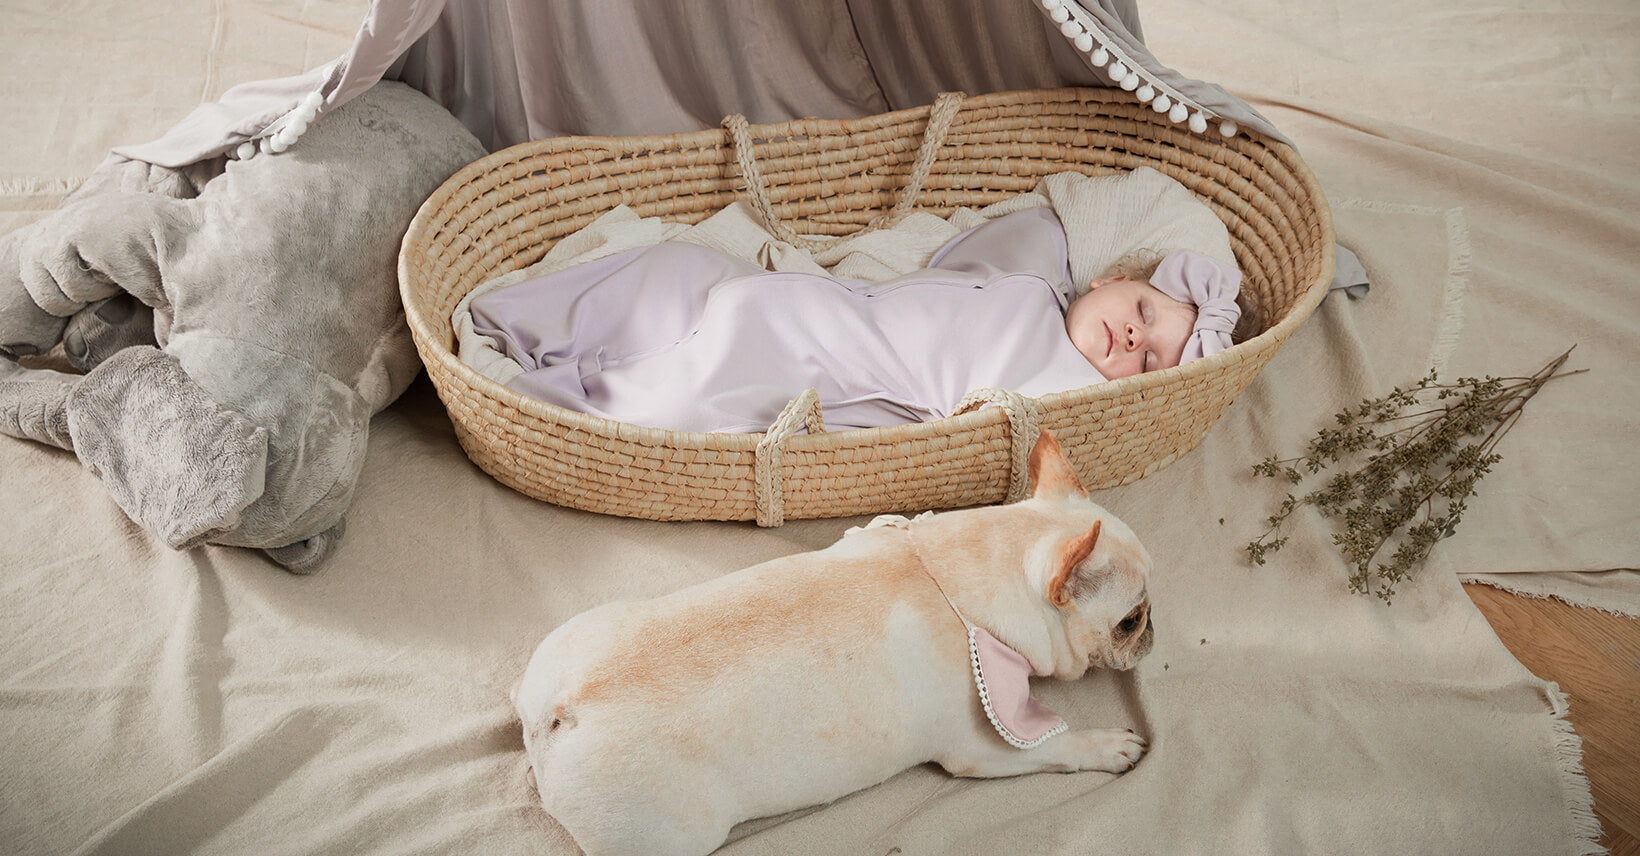 Are sleep sacks safe for newborns?